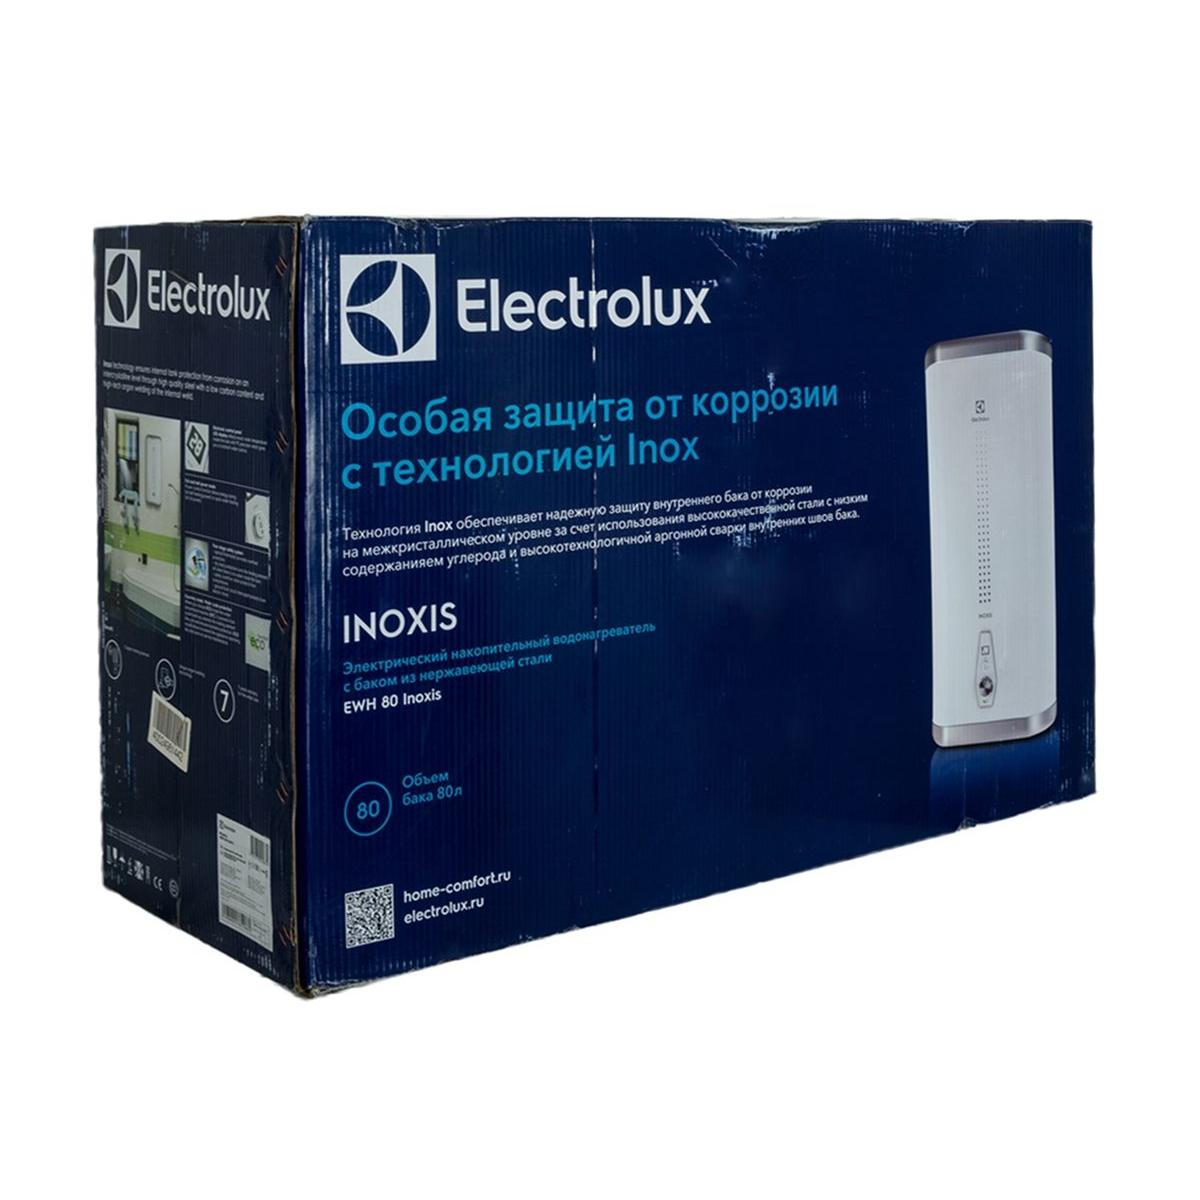 Electrolux EWH 30 Inoxis